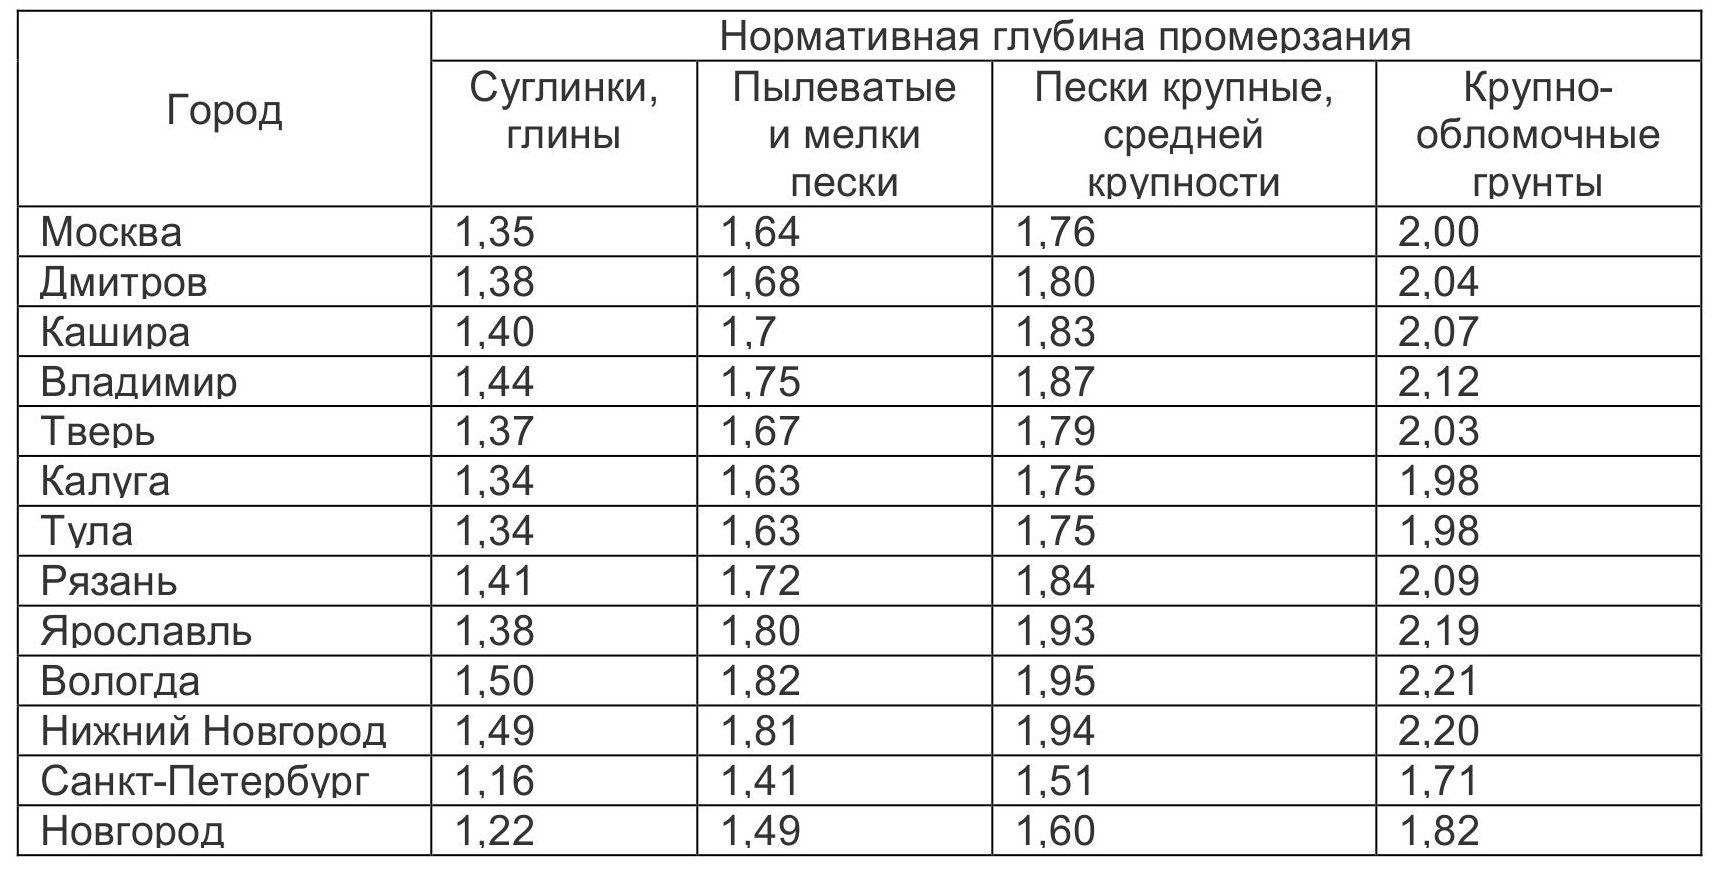 Глубина промерзания грунта в регионах России